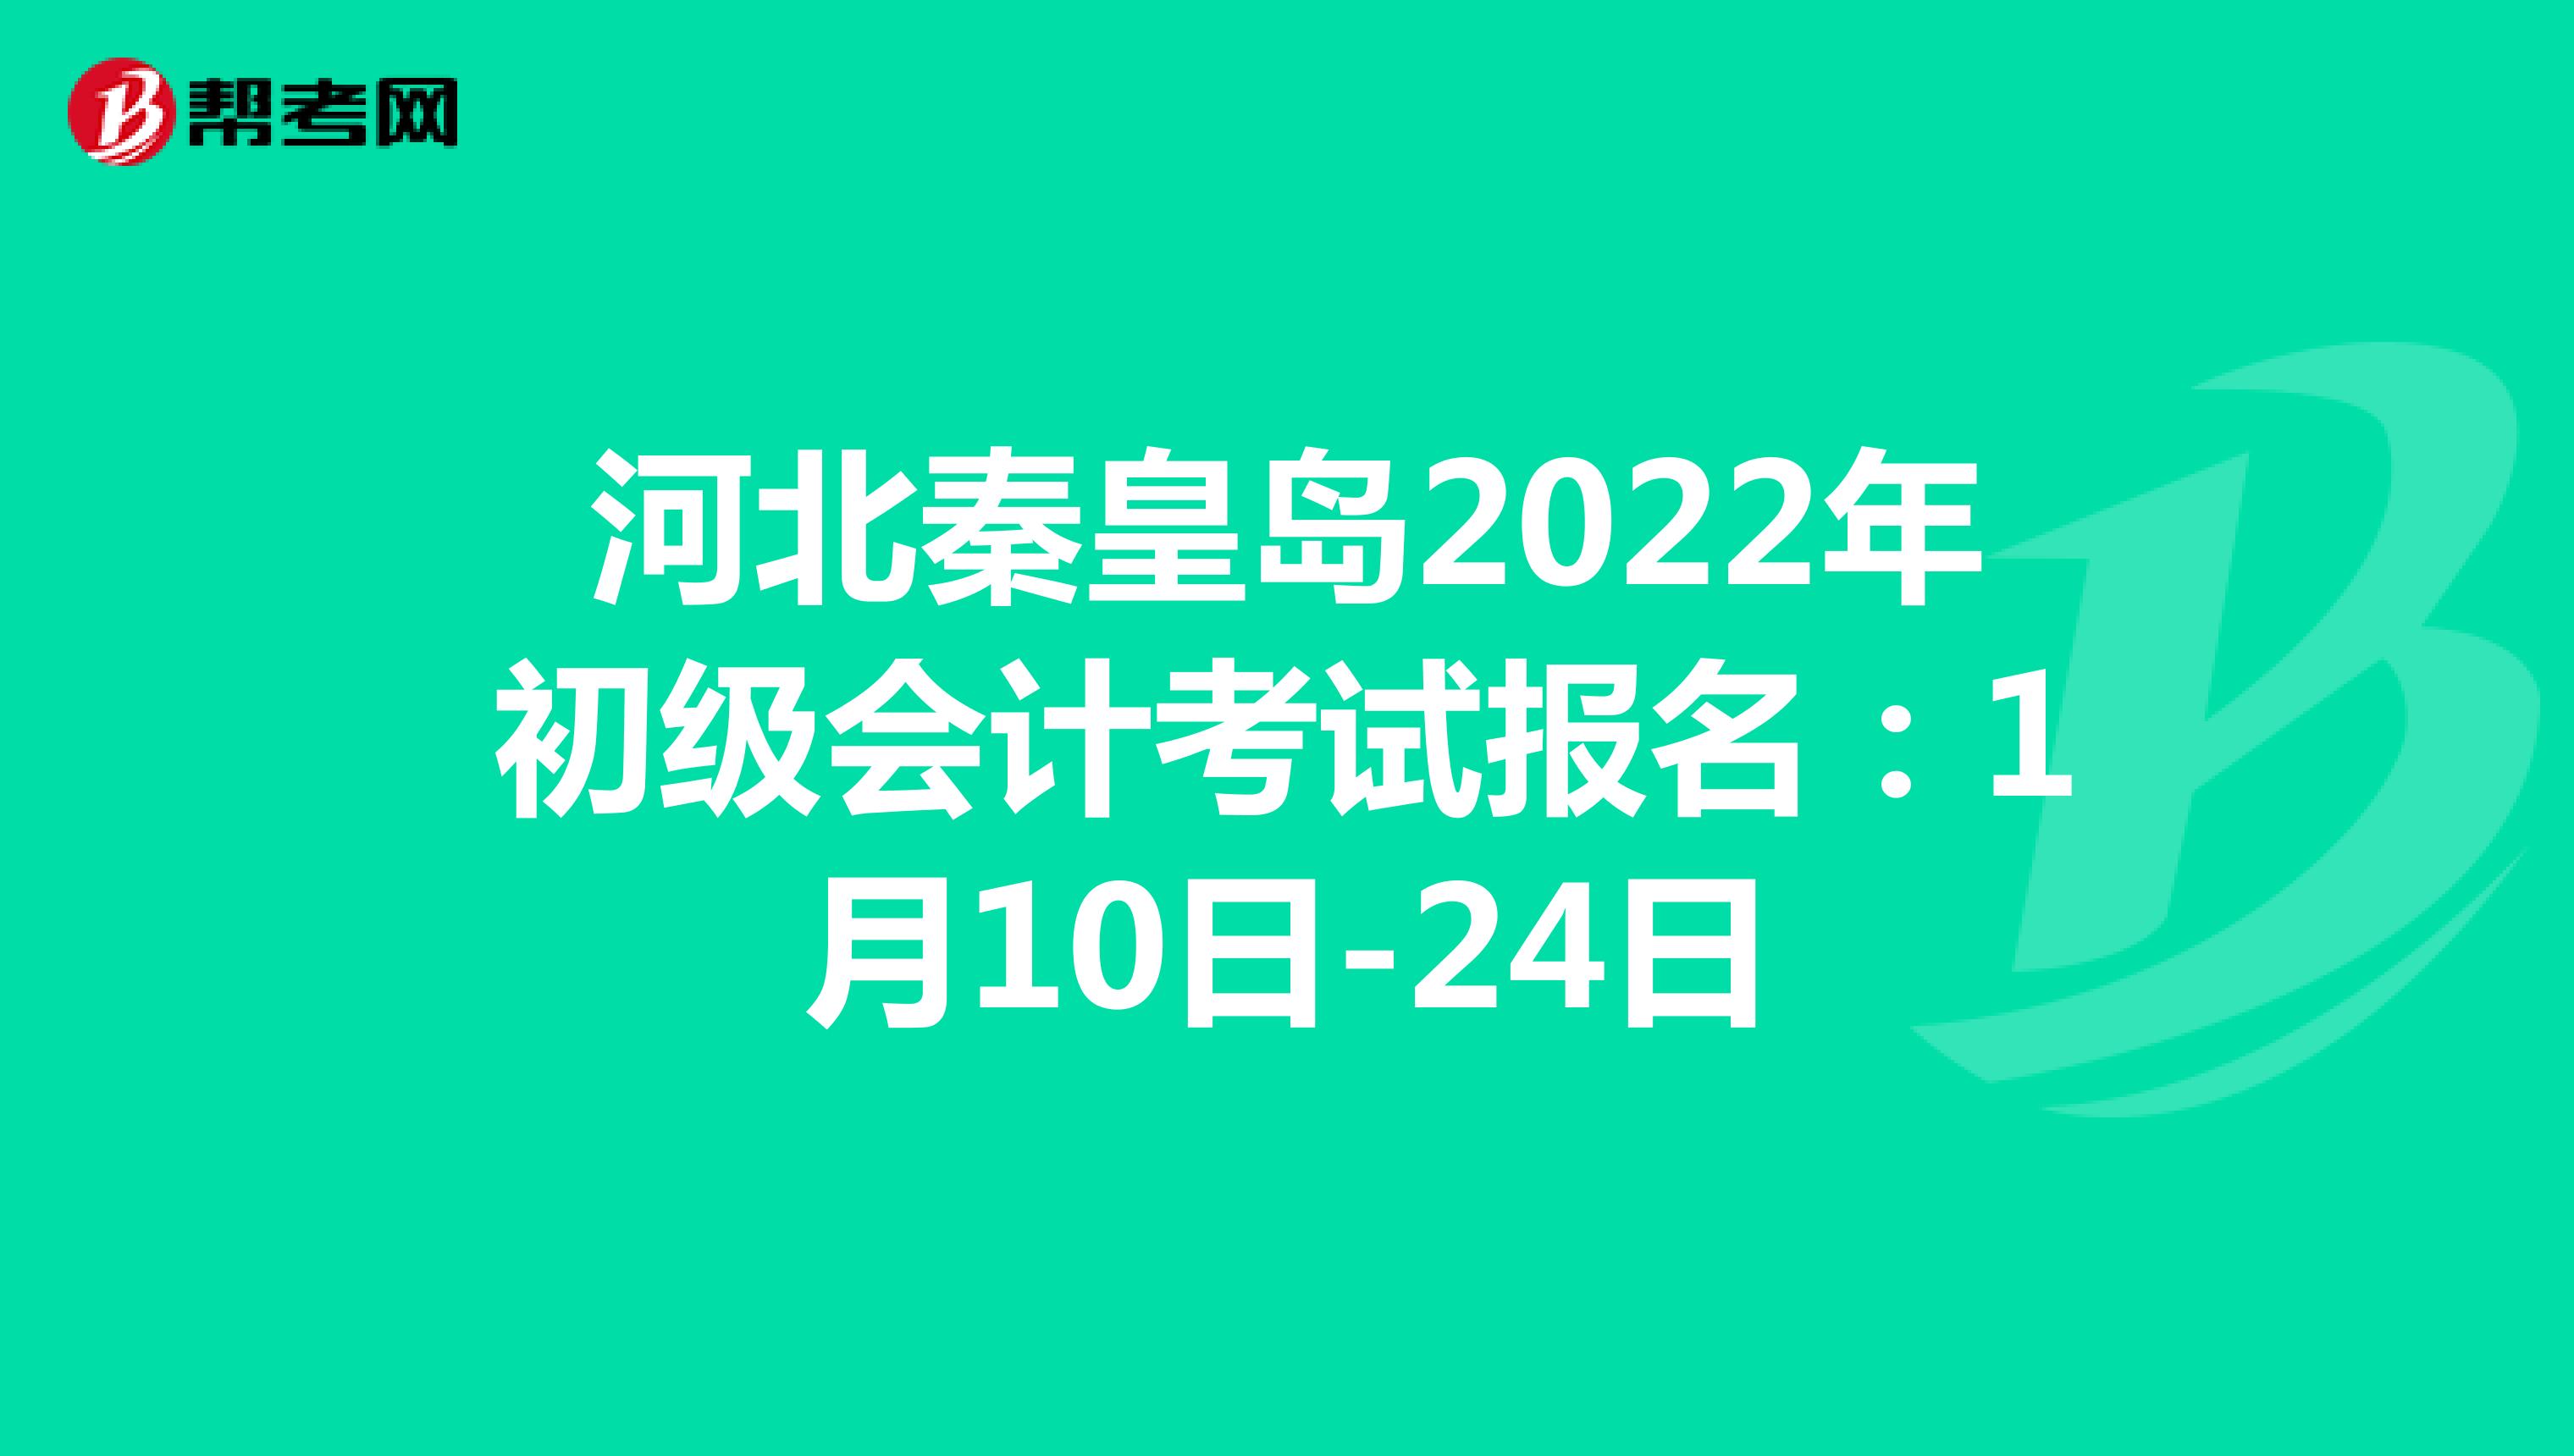 河北秦皇岛2022年初级会计考试报名：1月10日-24日